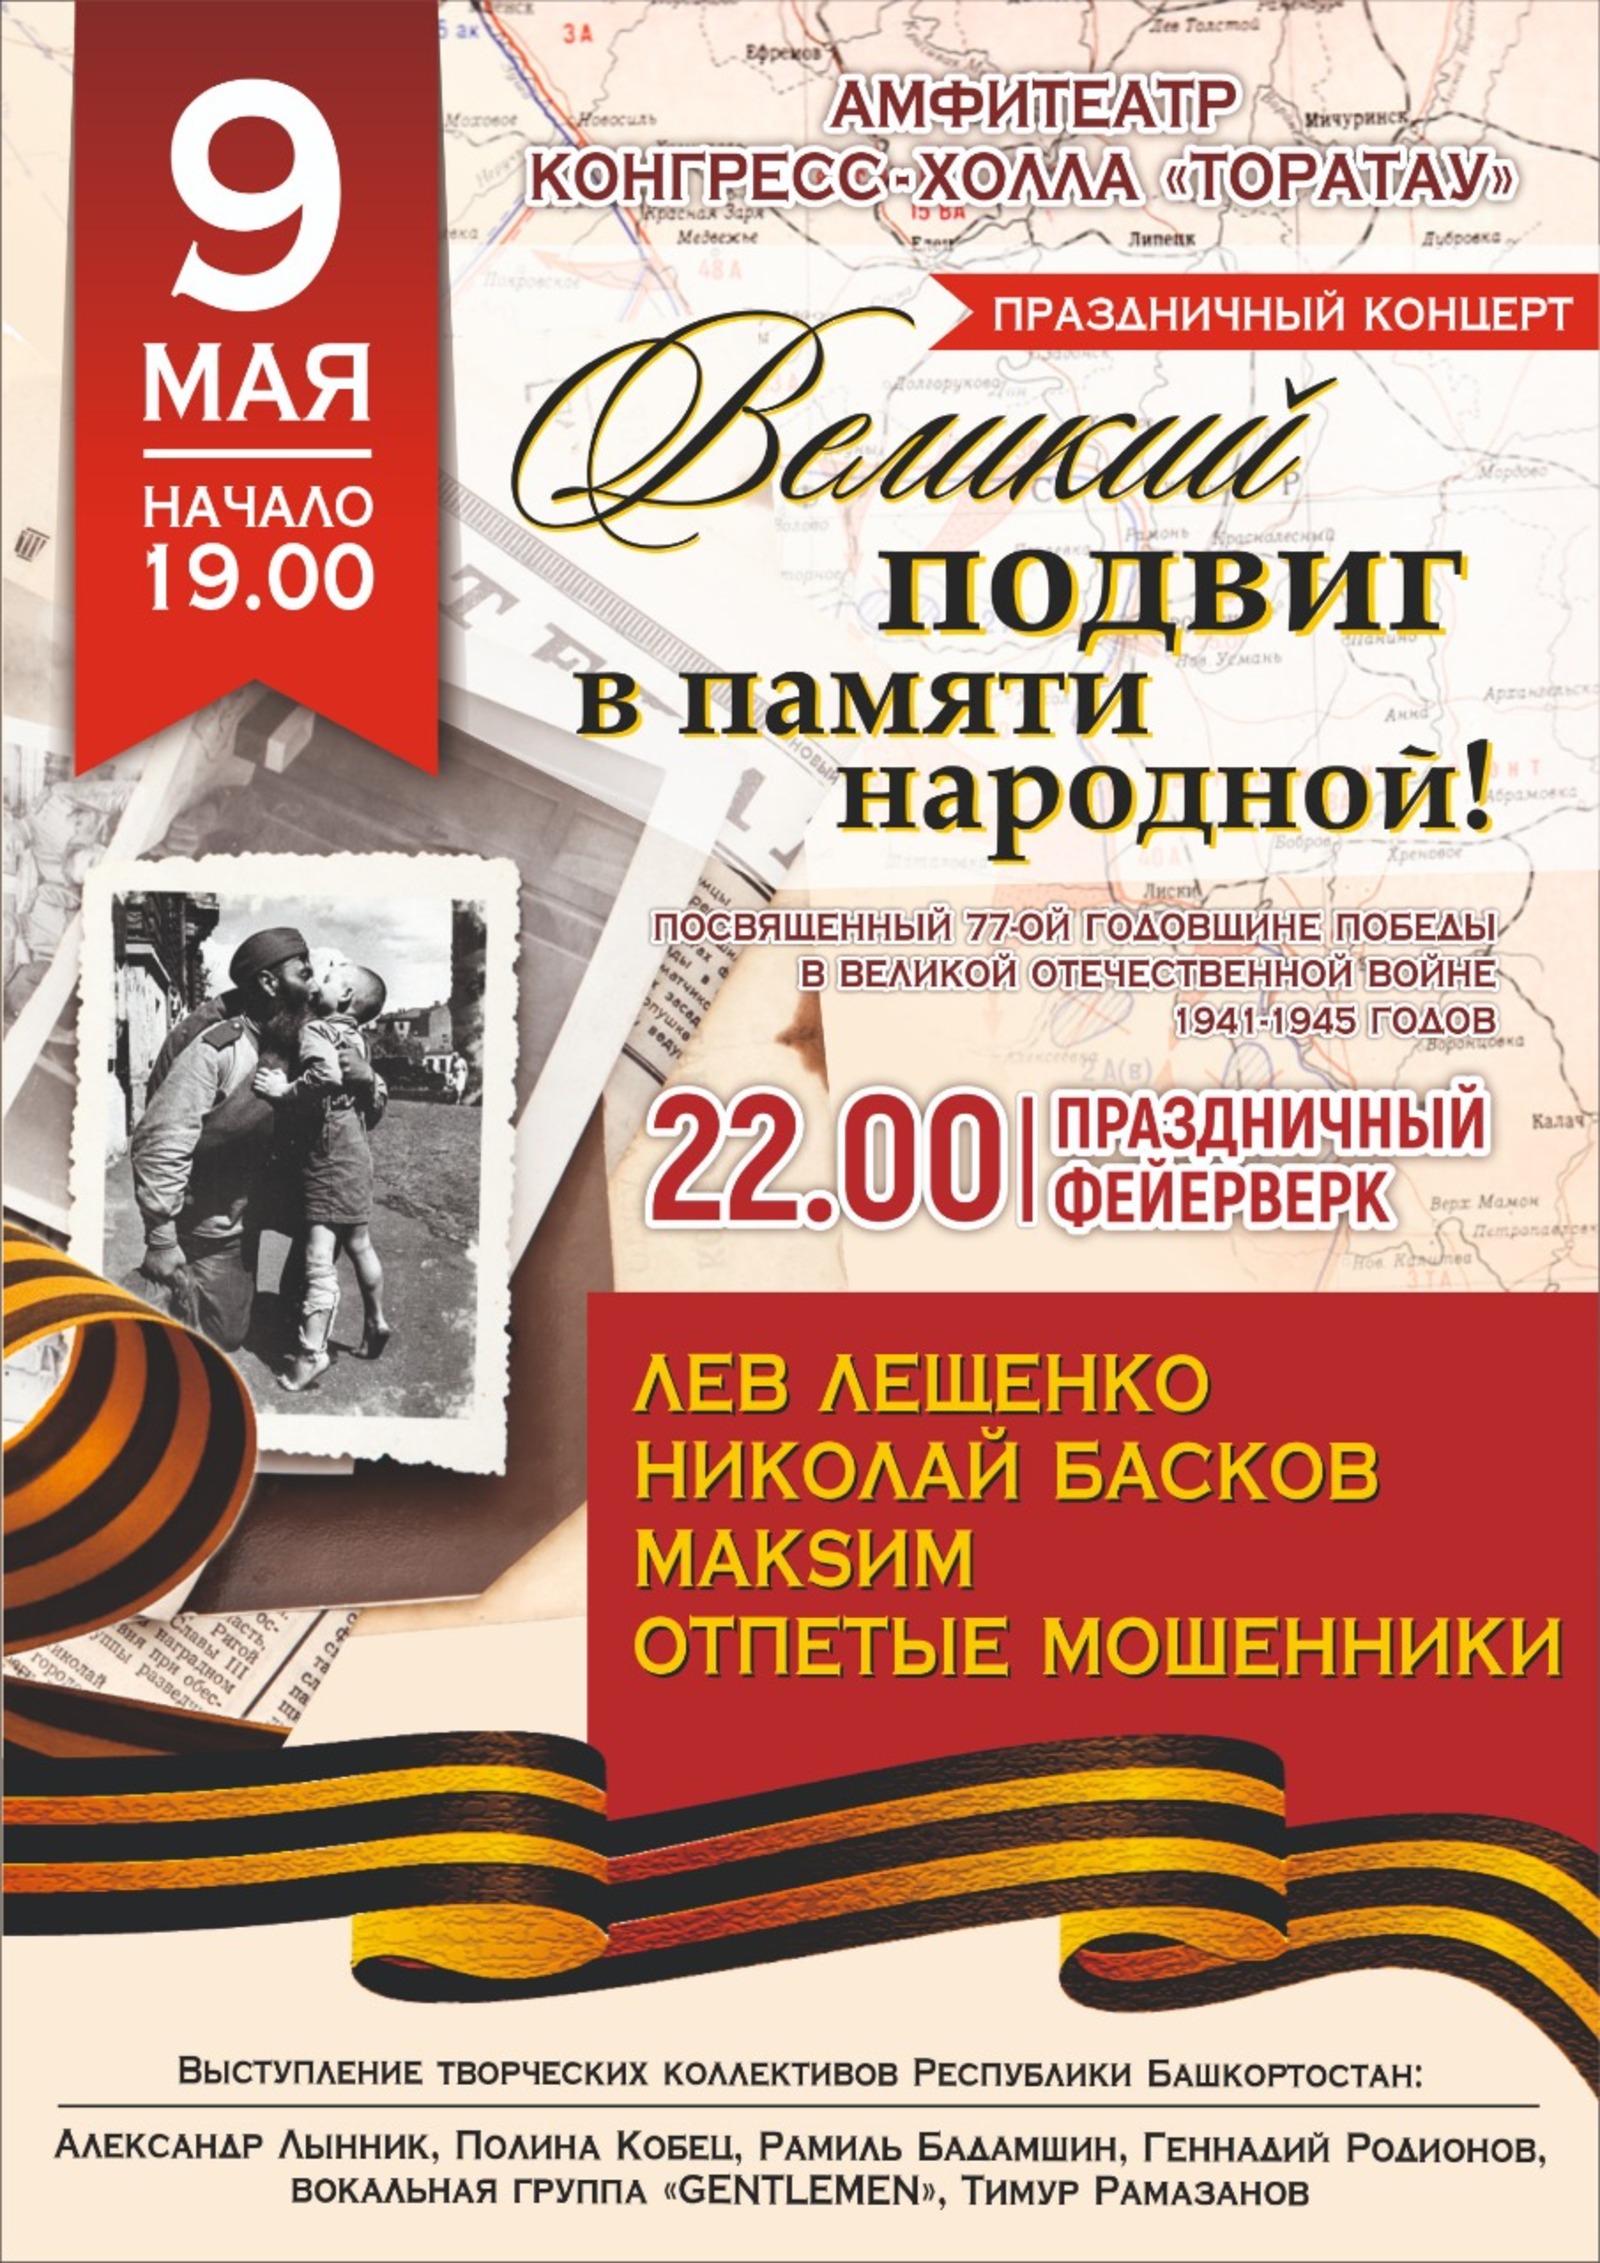 В Уфе ко Дню Победы пройдёт праздничный концерт «Великий подвиг в памяти народной!»